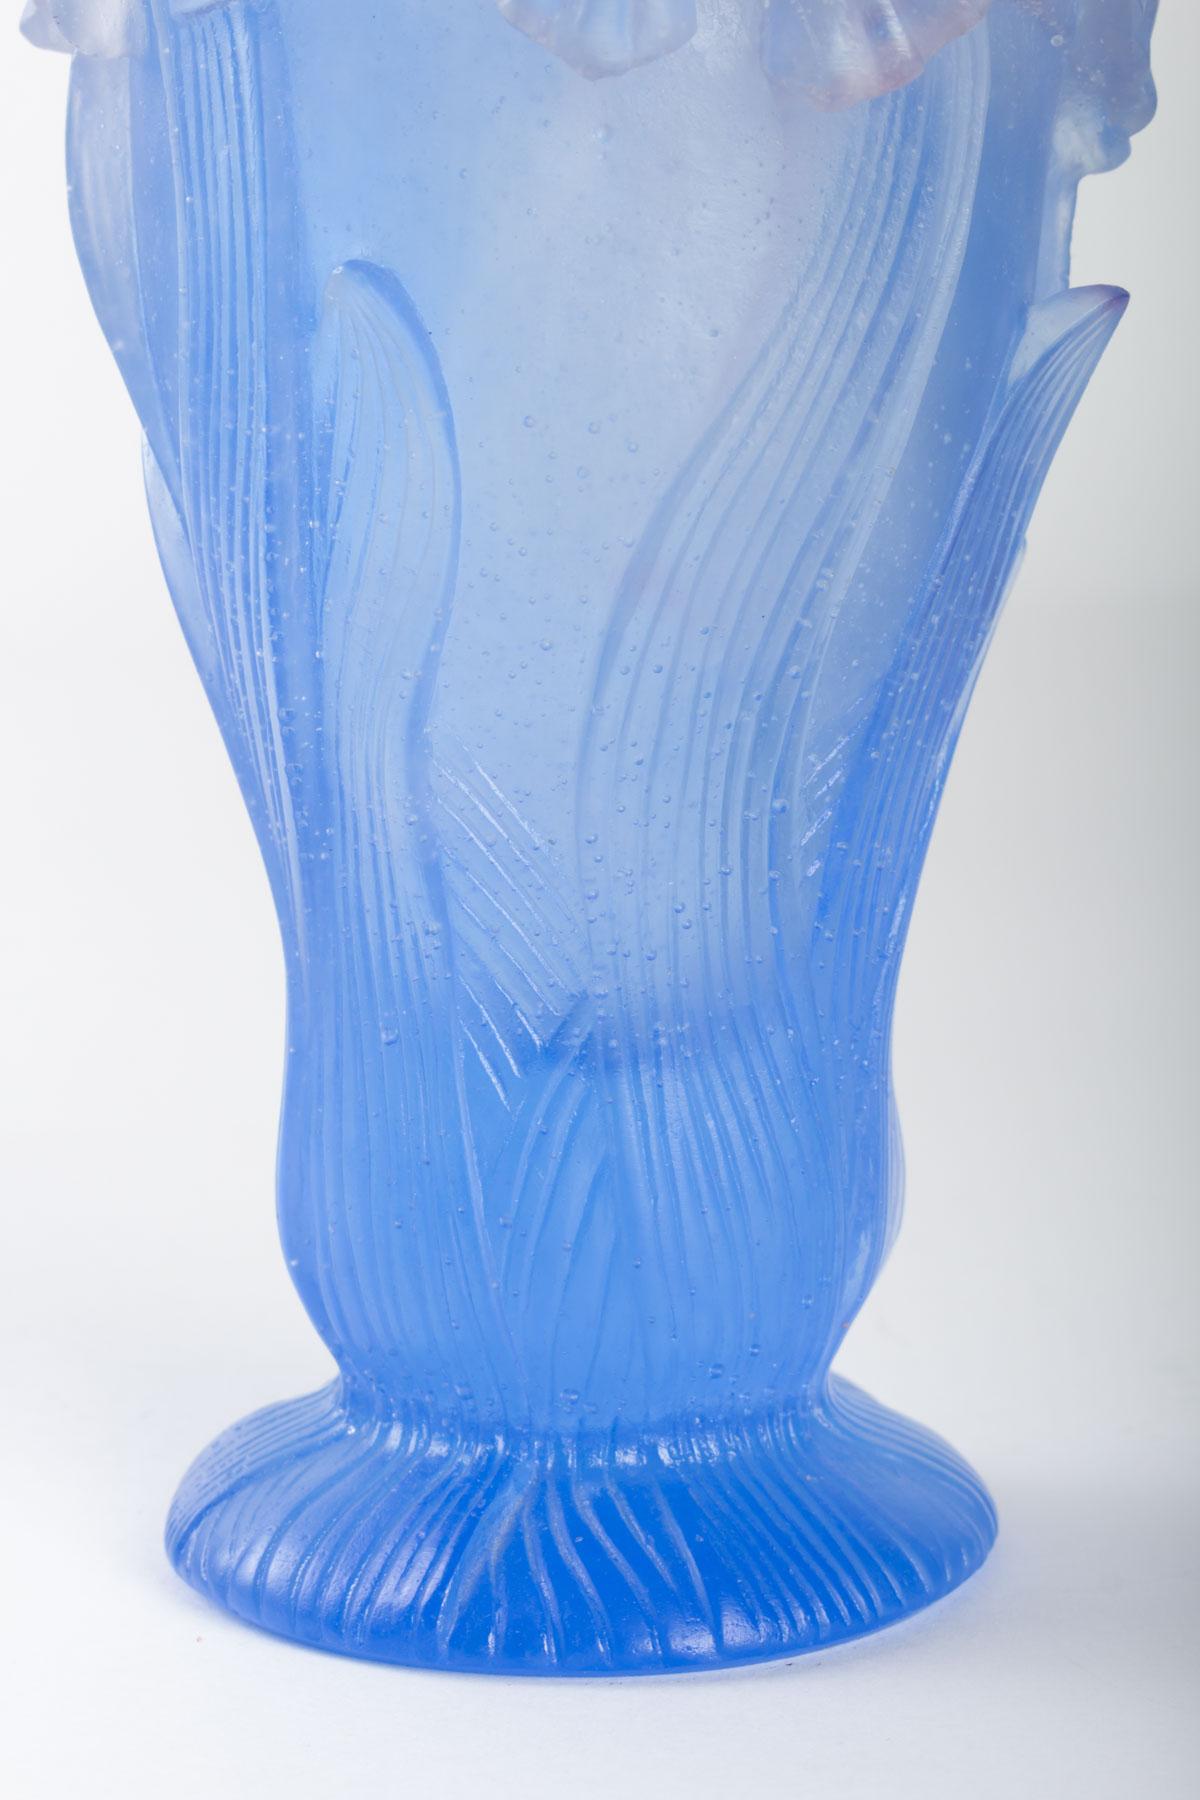 French Daum Vase, 20th Century, Pâte De Verre, Signed Daum, France